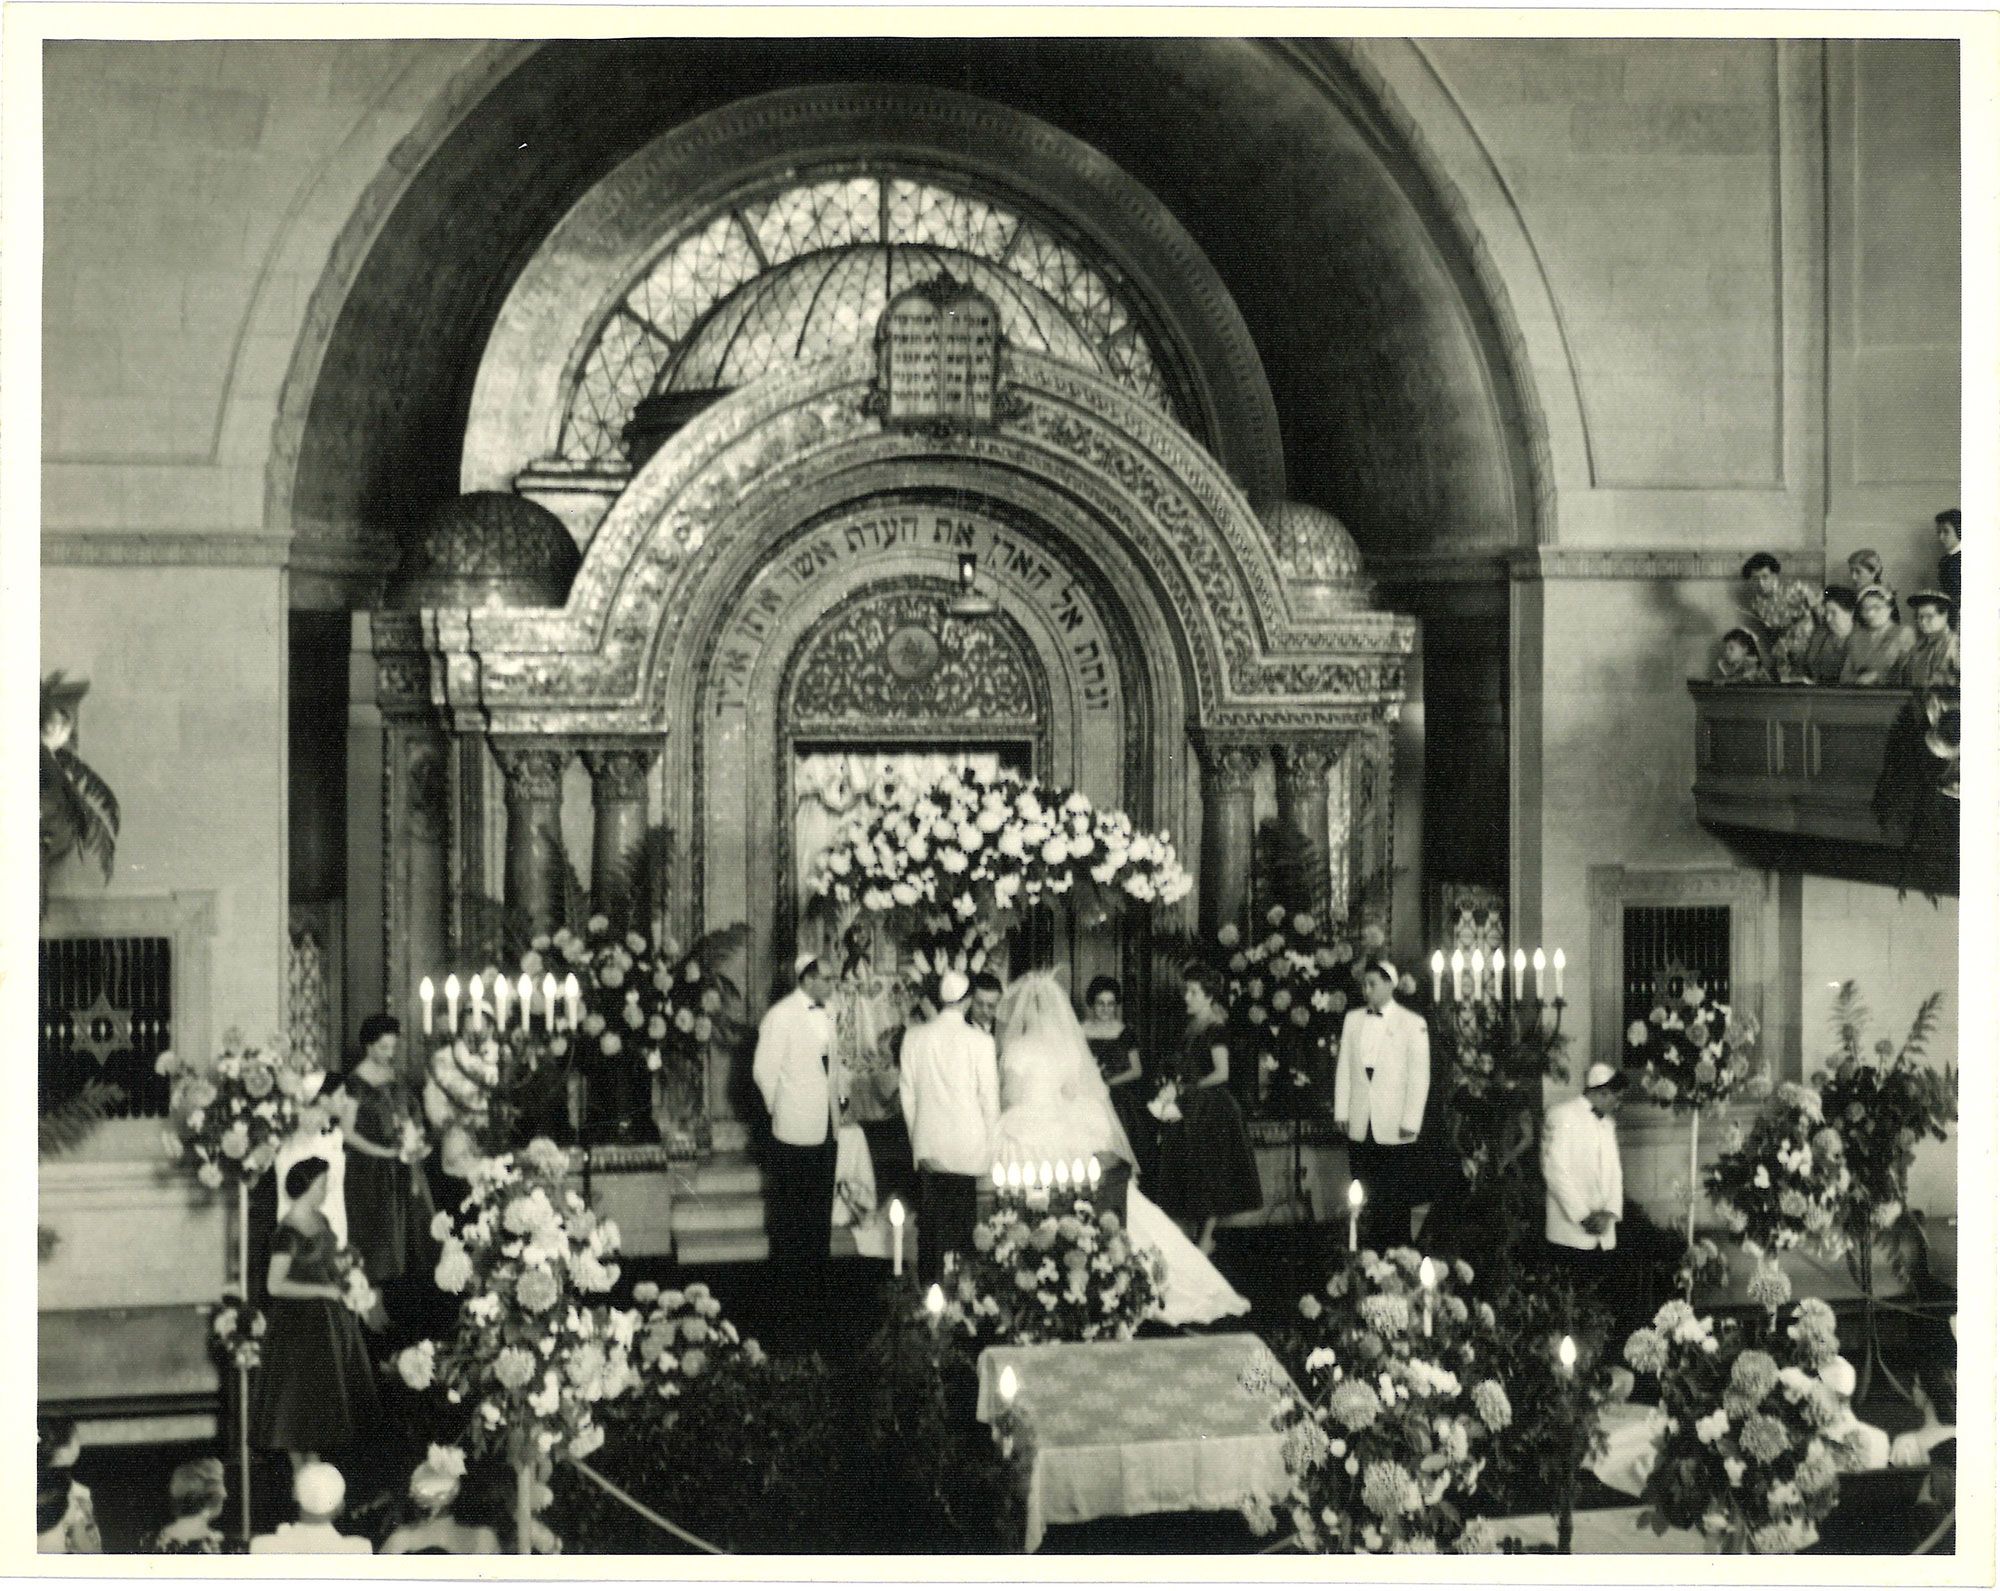 Wedding ceremony inside the Bikur Cholim synagogue